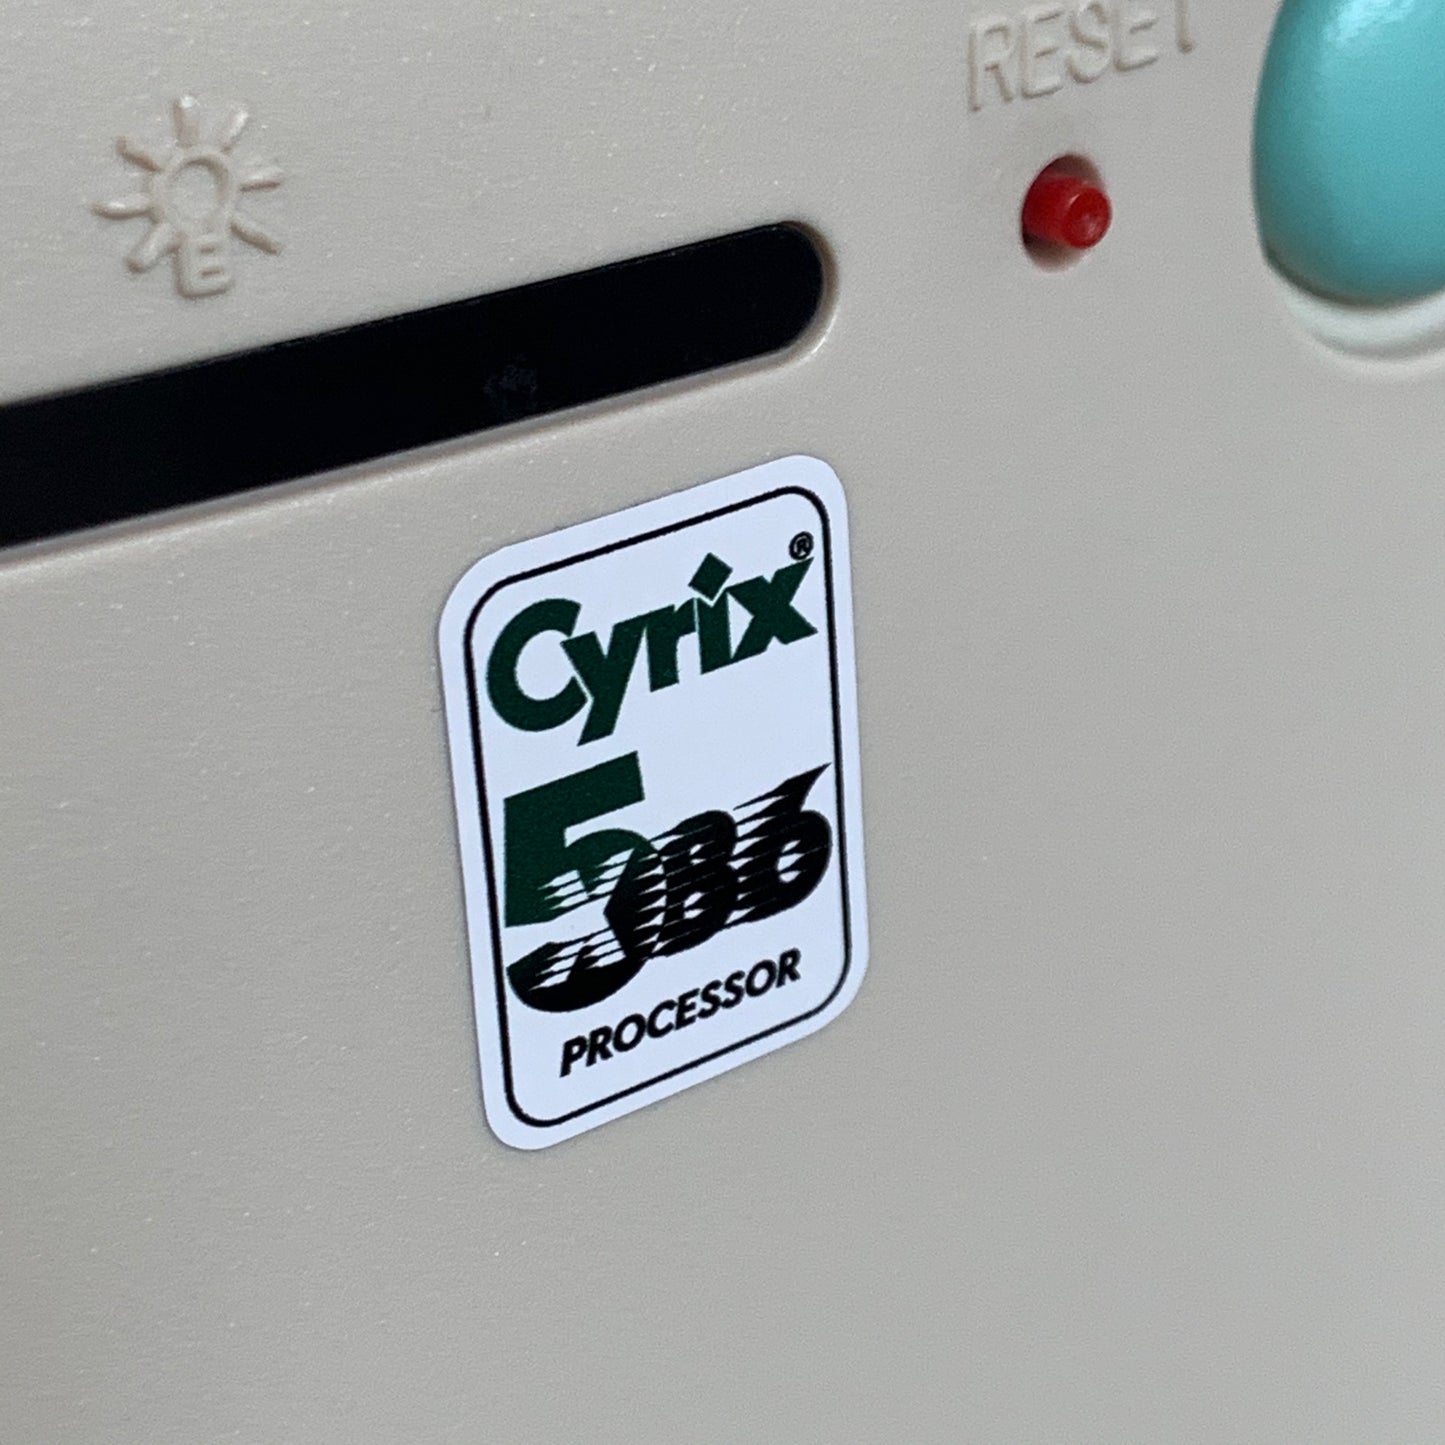 Cyrix 5x86 Processor Case Badge Sticker - White